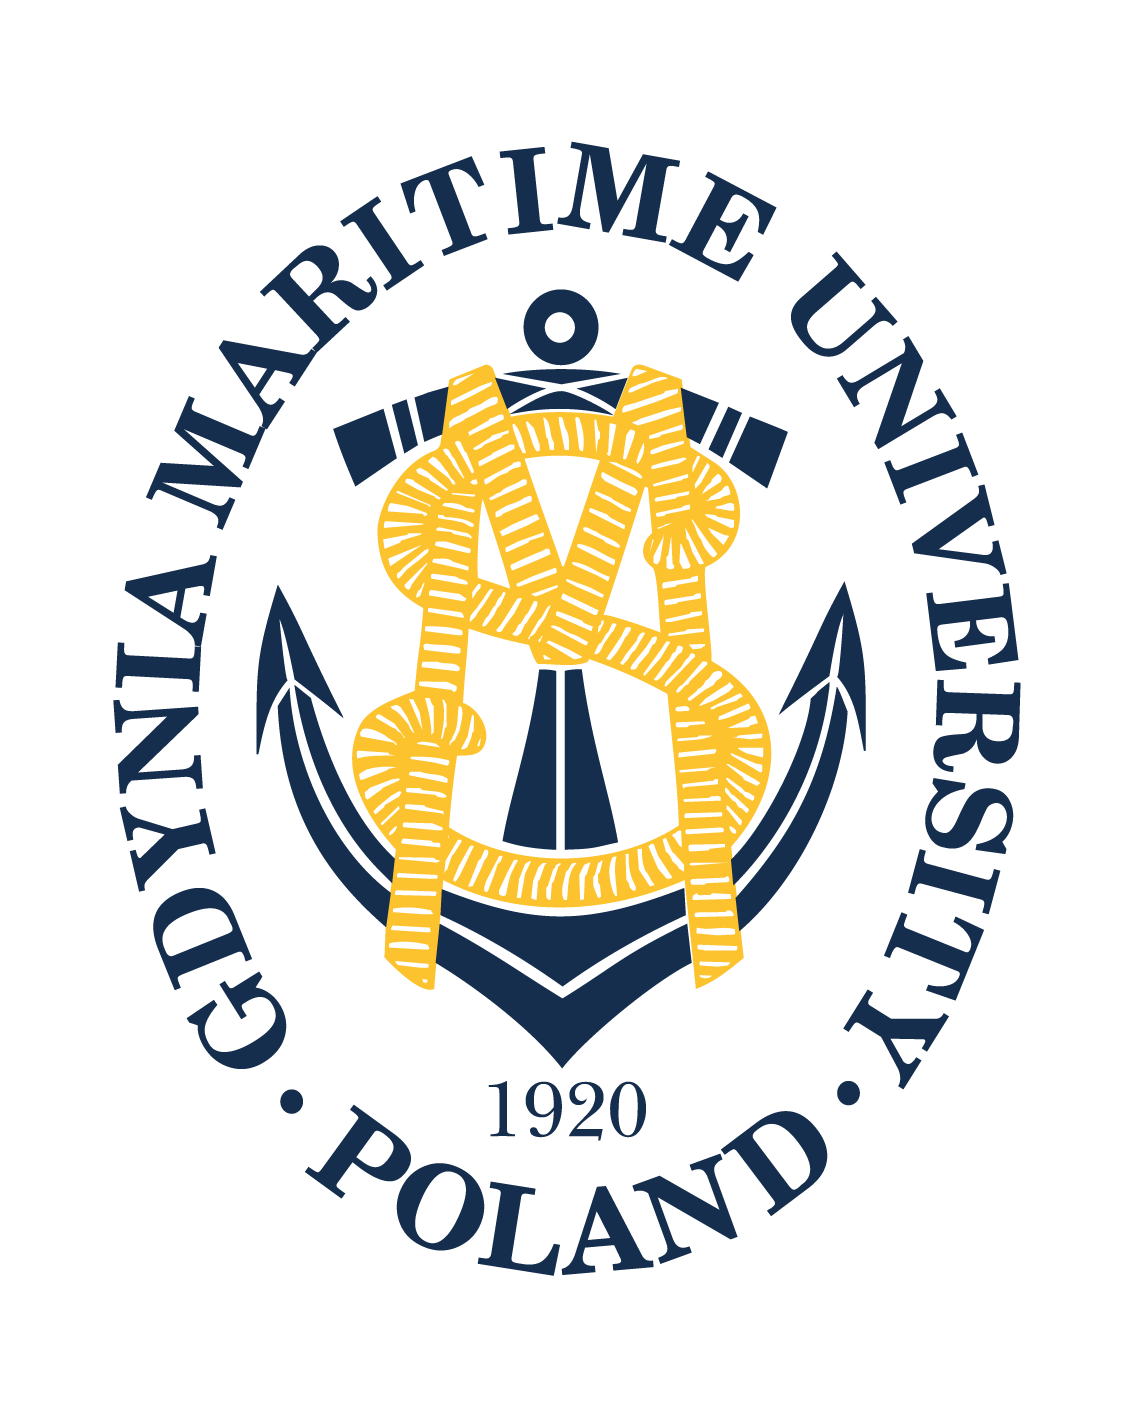 Gdynia Maritime University